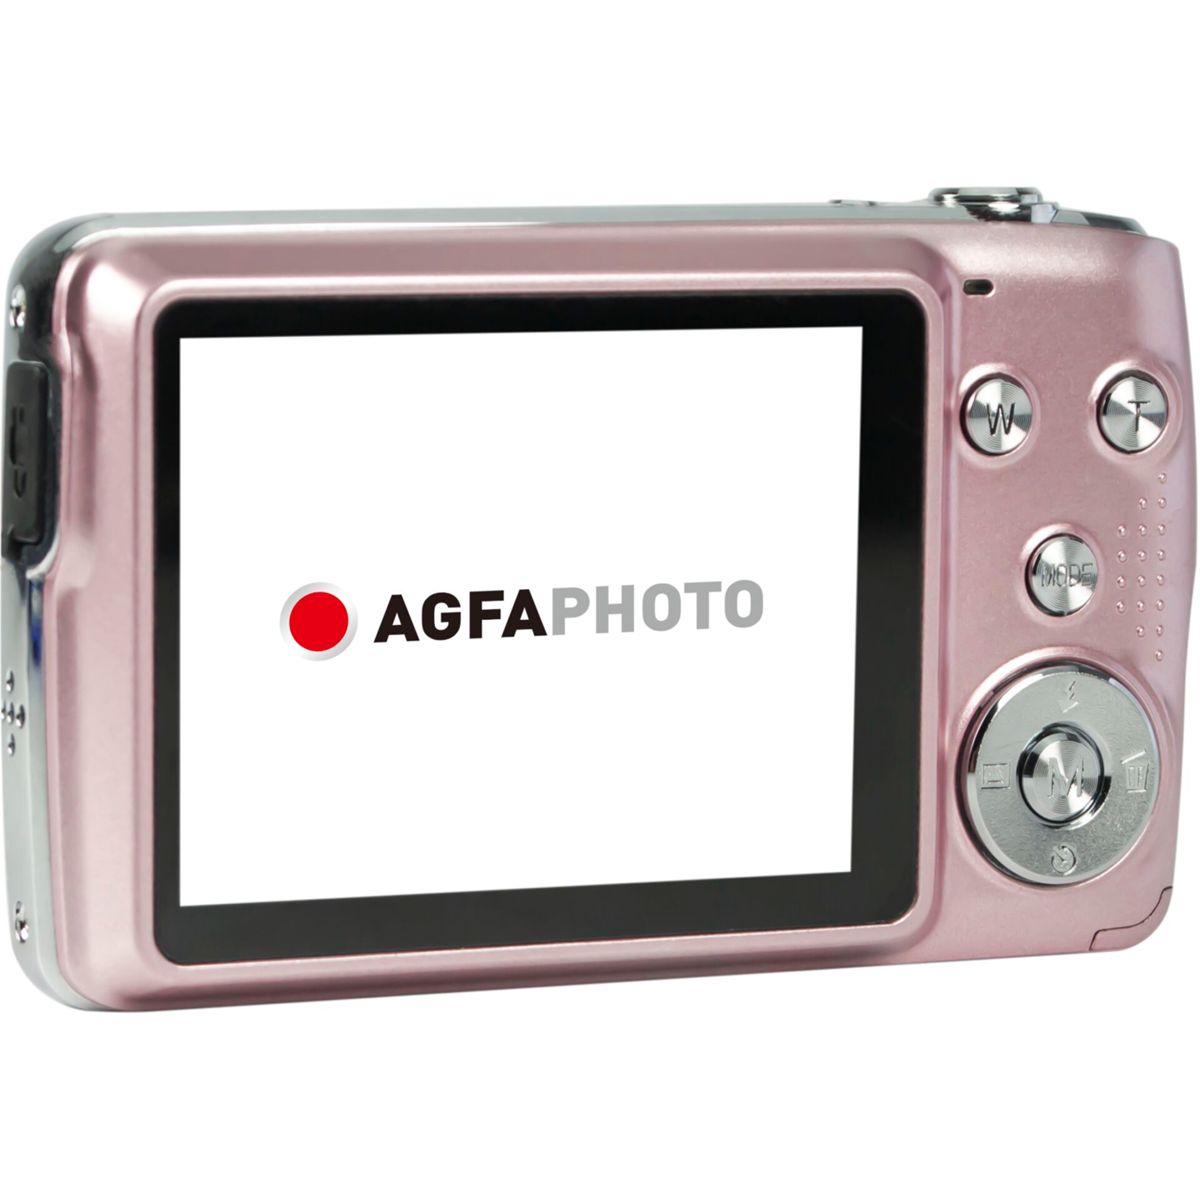 AGFAPHOTO DC8200 Digitalkamera pink Realishot pink-